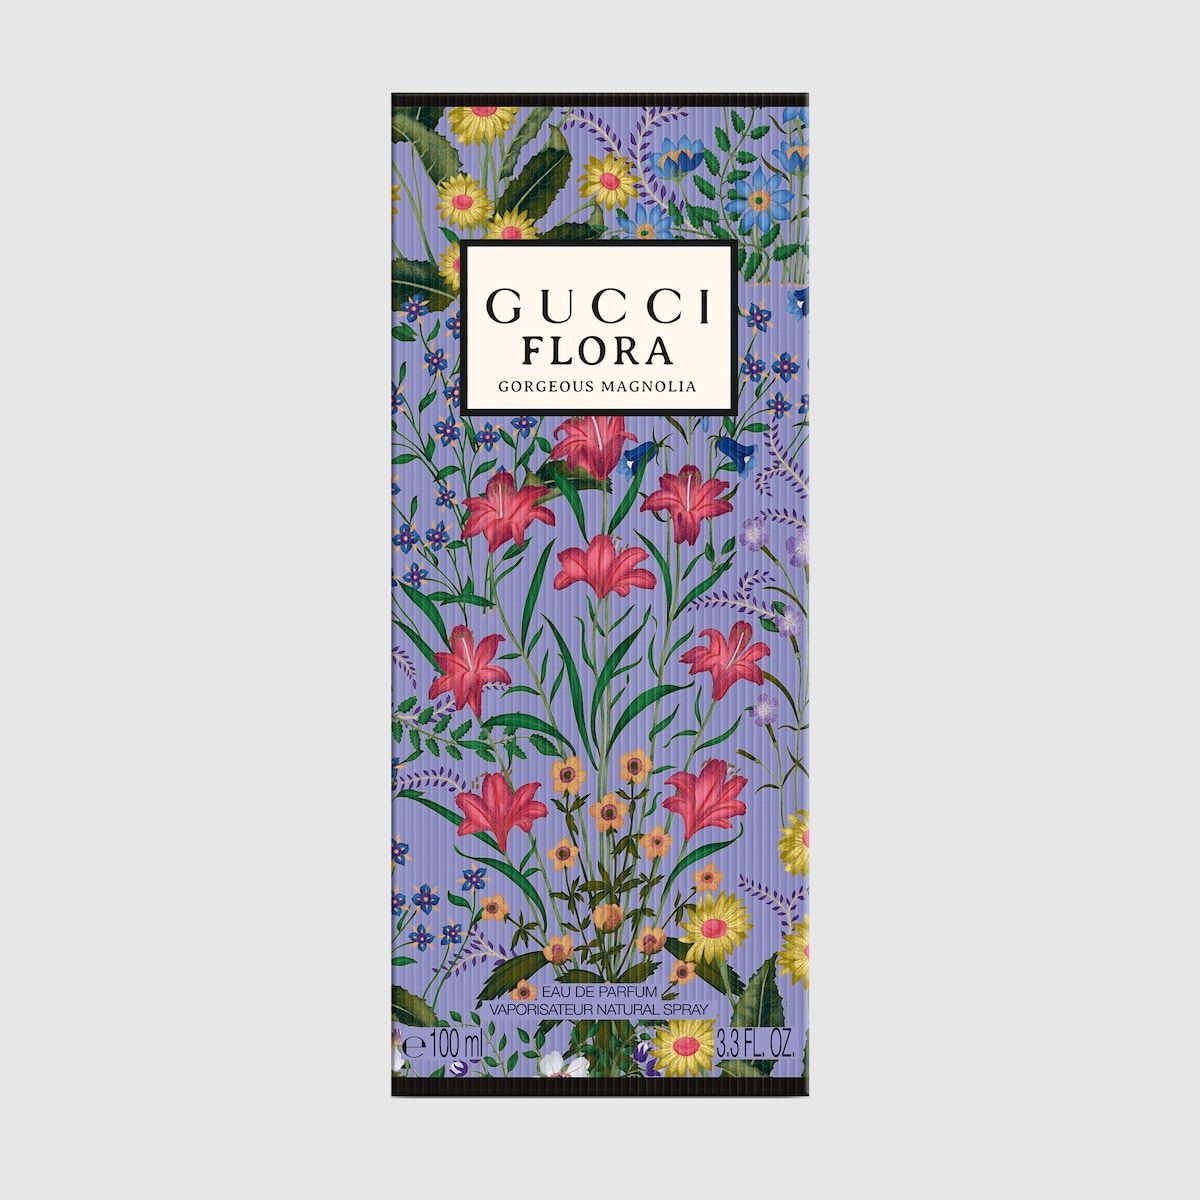 Gucci Flora Gorgeous Magnolia, 100ml, eau de parfum | Gucci (US)